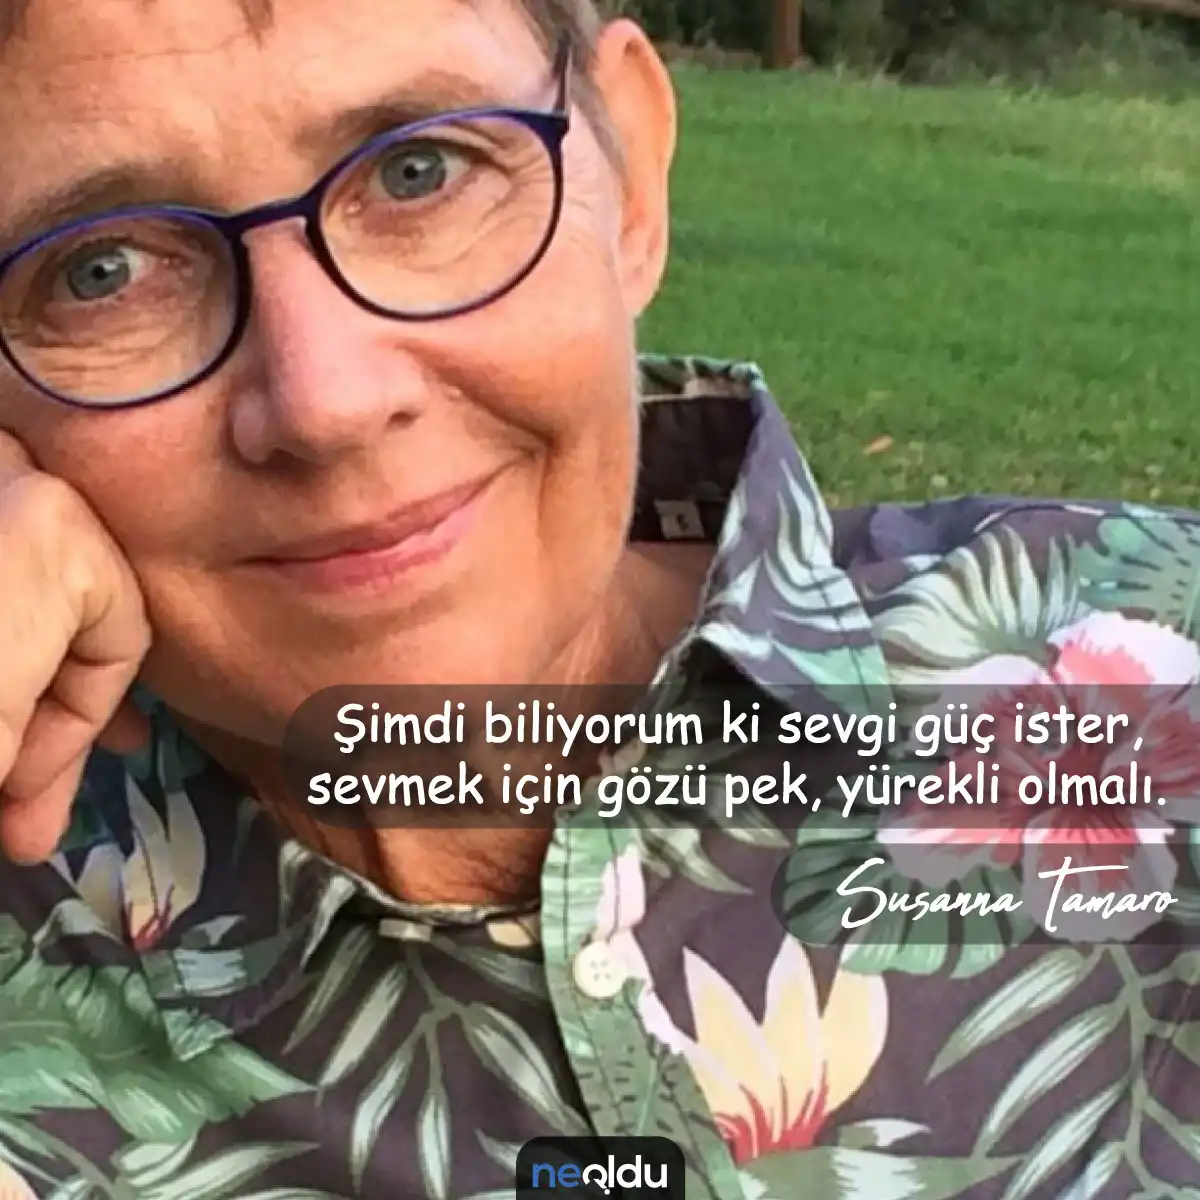 Susanna Tamaro Sözleri